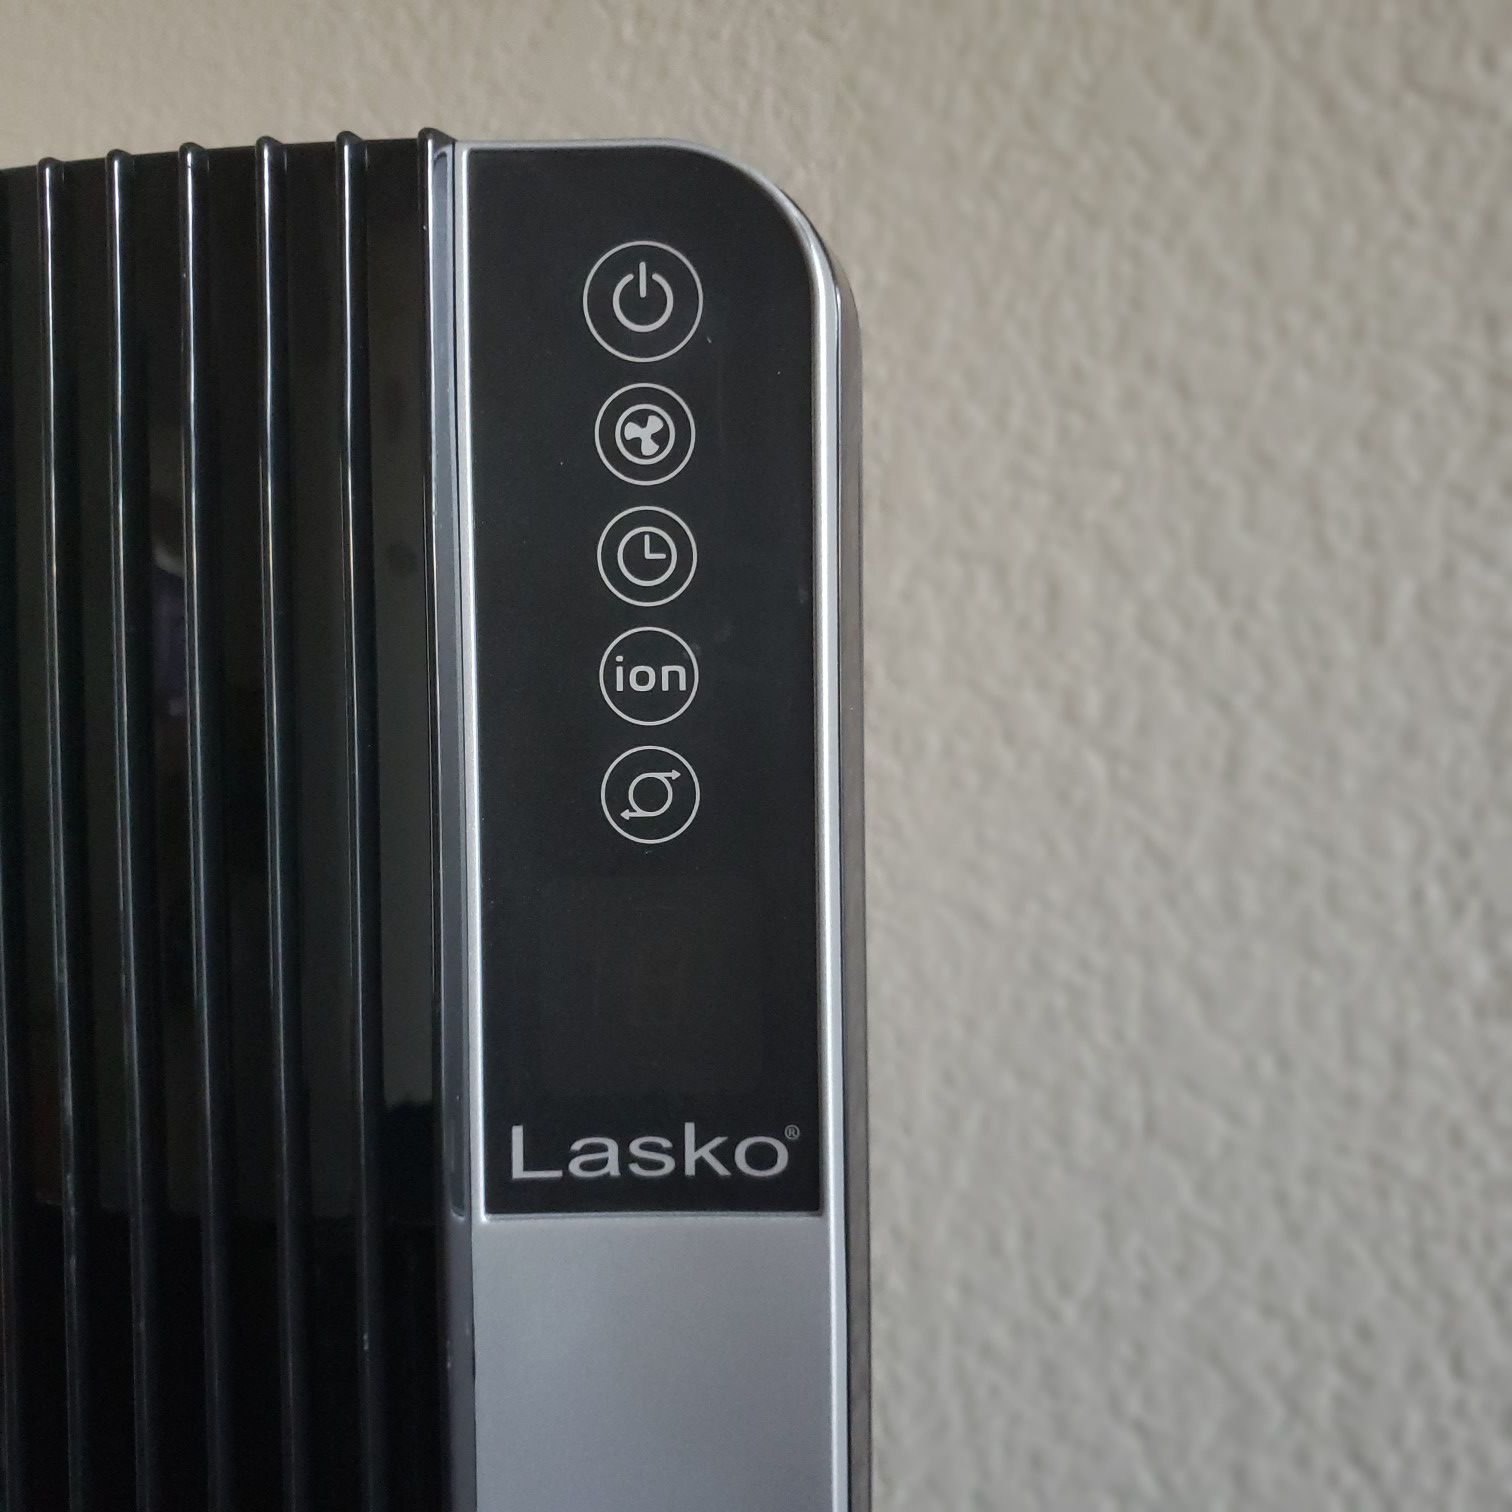 Lasko’s 48″ Ultra Air 3-Speed Performance Tower Fan